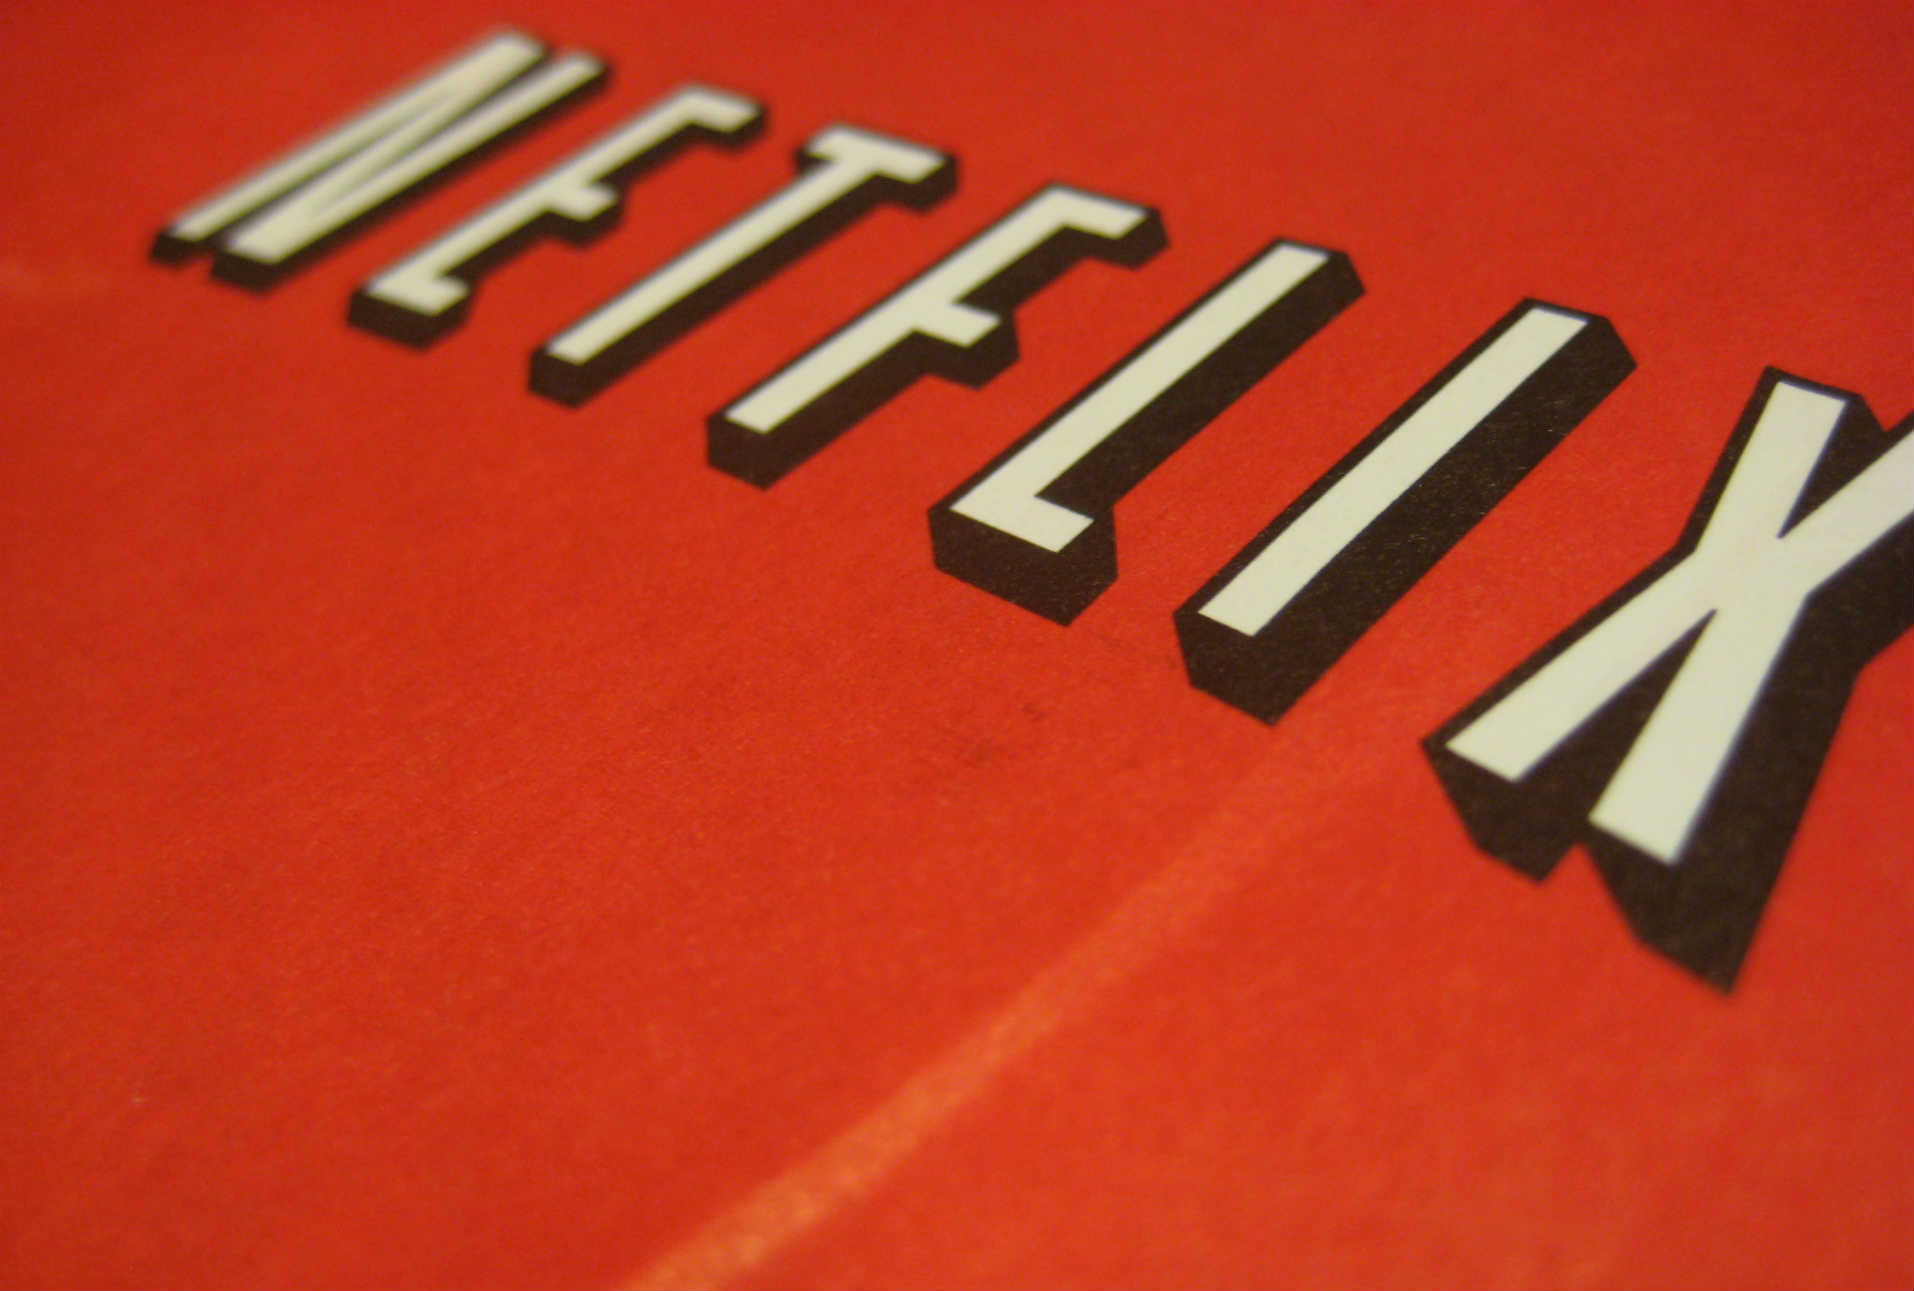 Europa plantea impuestos a plataformas como Netflix para promover producciones locales